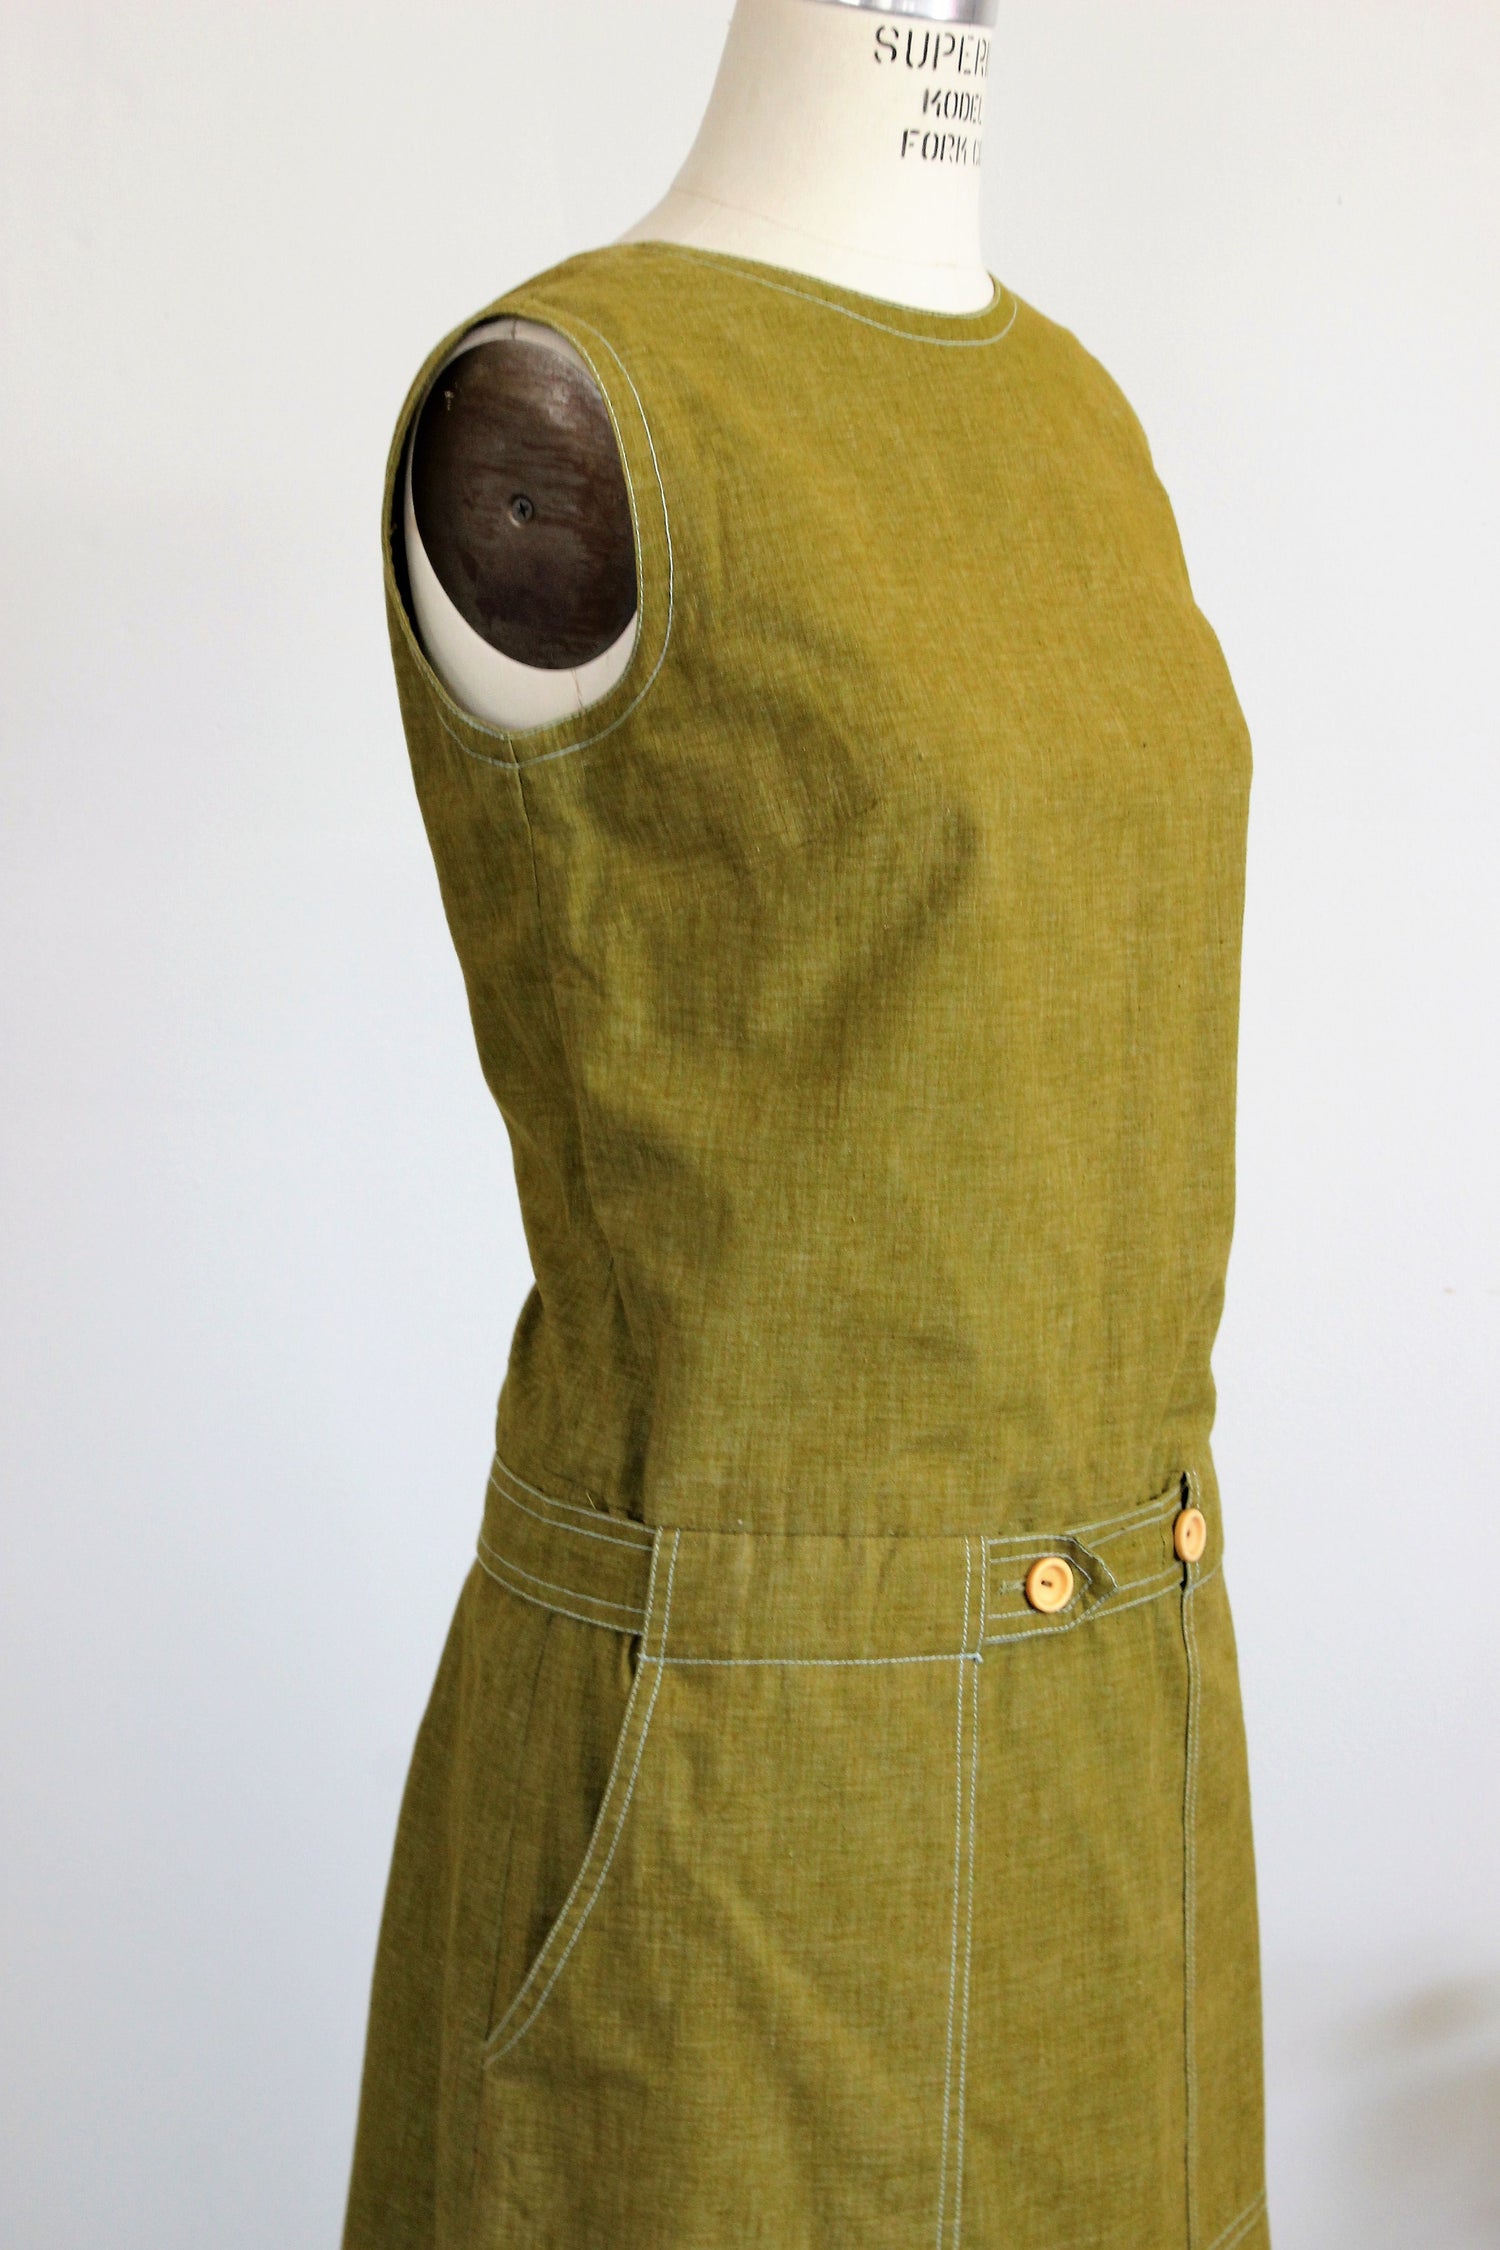 Vintage 1960s Mod Dress Romper With Pockets And Belt